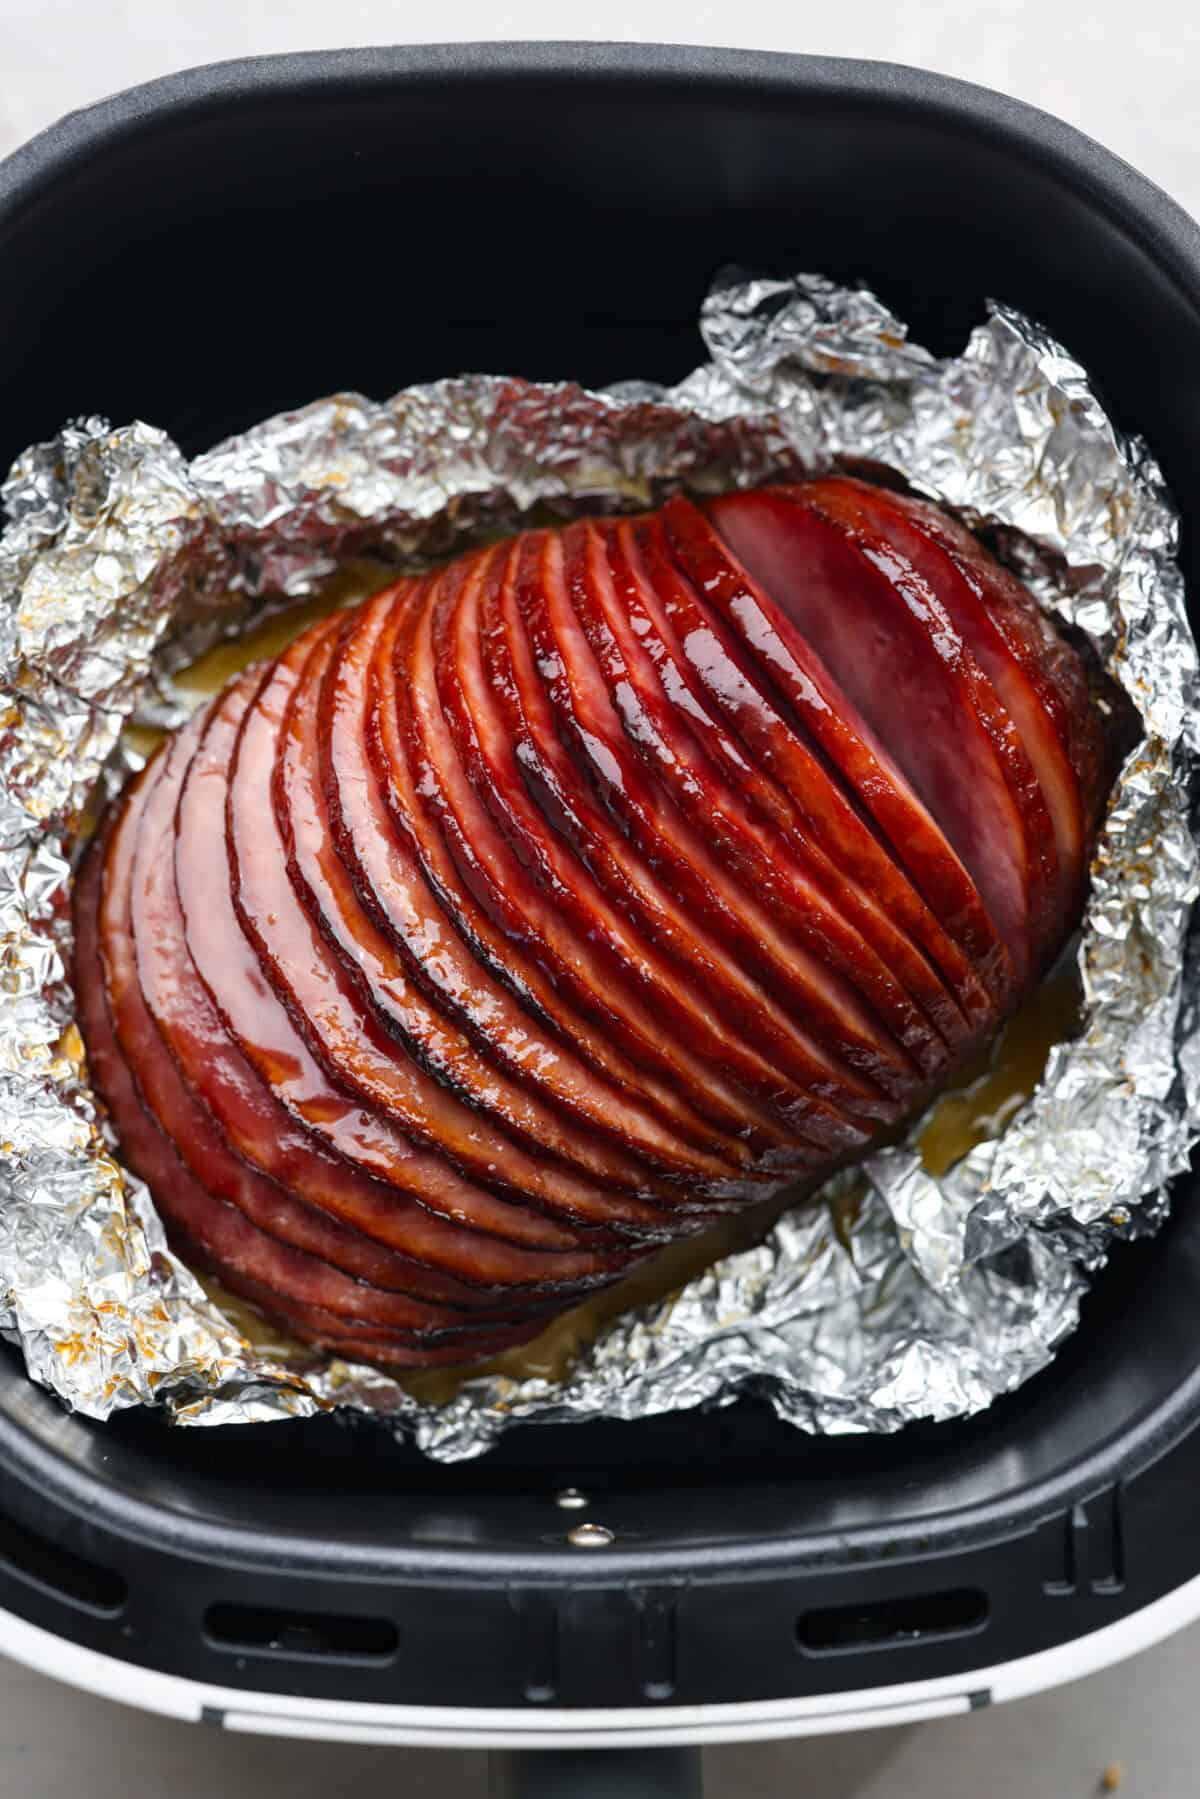 Sliced ham in an air fryer.